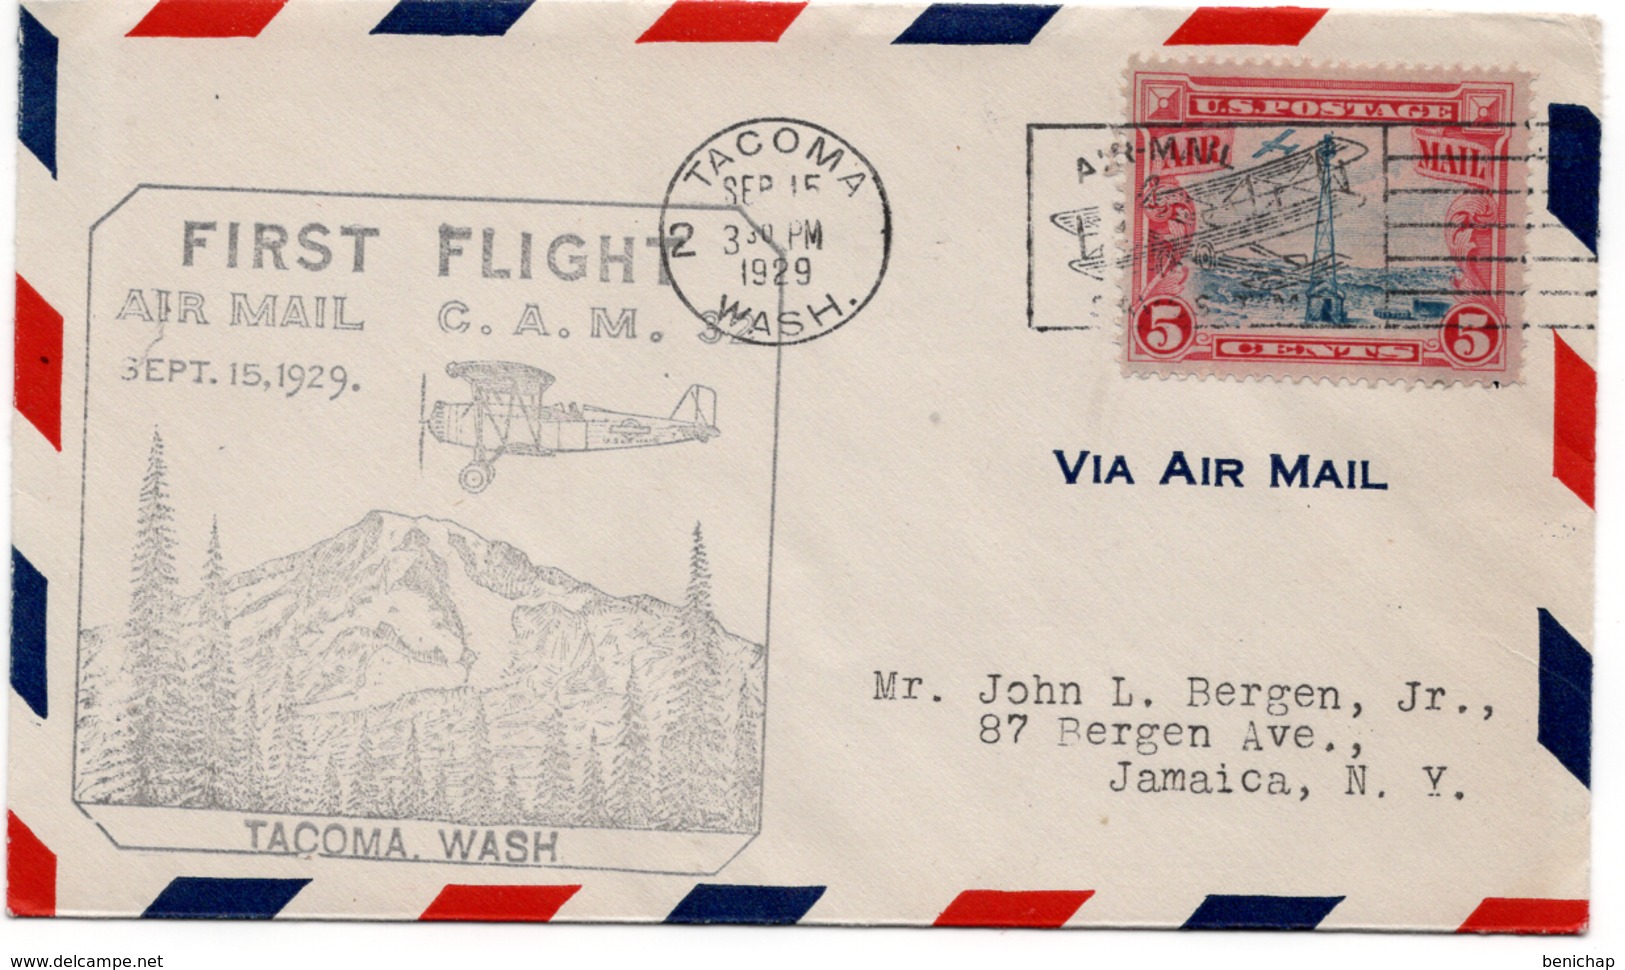 (R44) SCOTT C11 - 5 C BEACON - FIRST FLIGHT C.A.M.32 - TACOMA - JAMAICA - 1929. - 1c. 1918-1940 Lettres